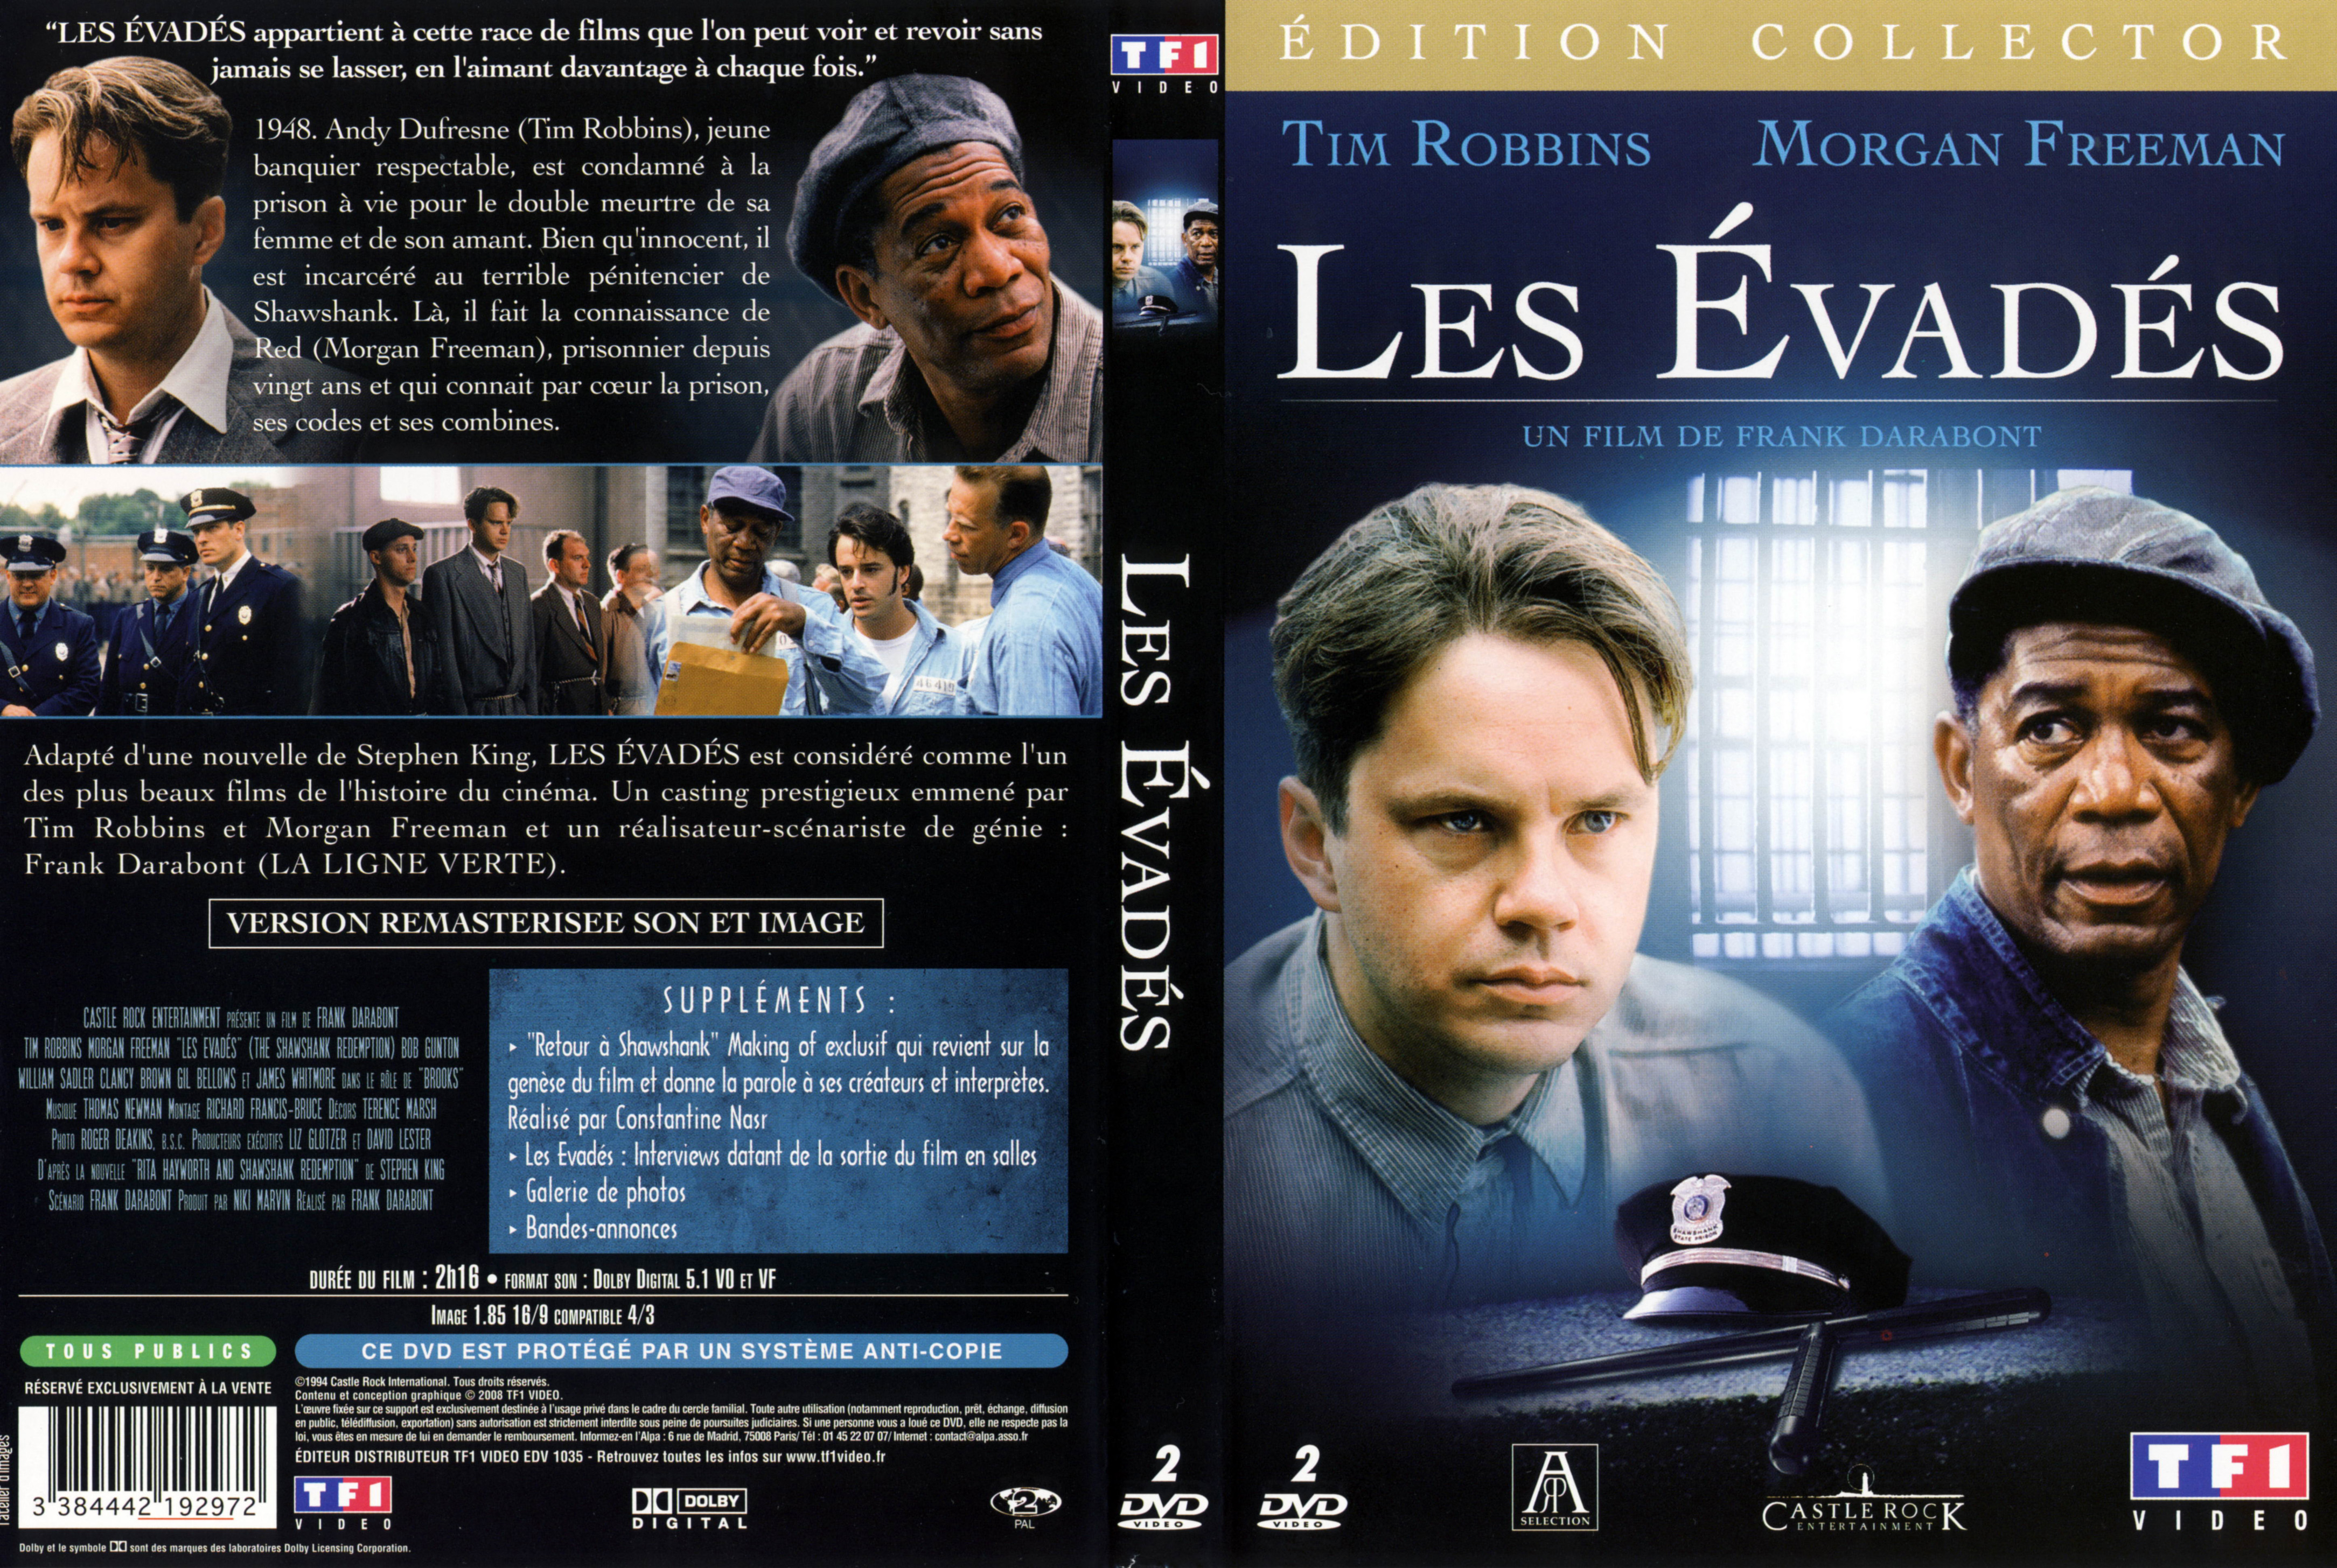 Jaquette DVD Les vads v2